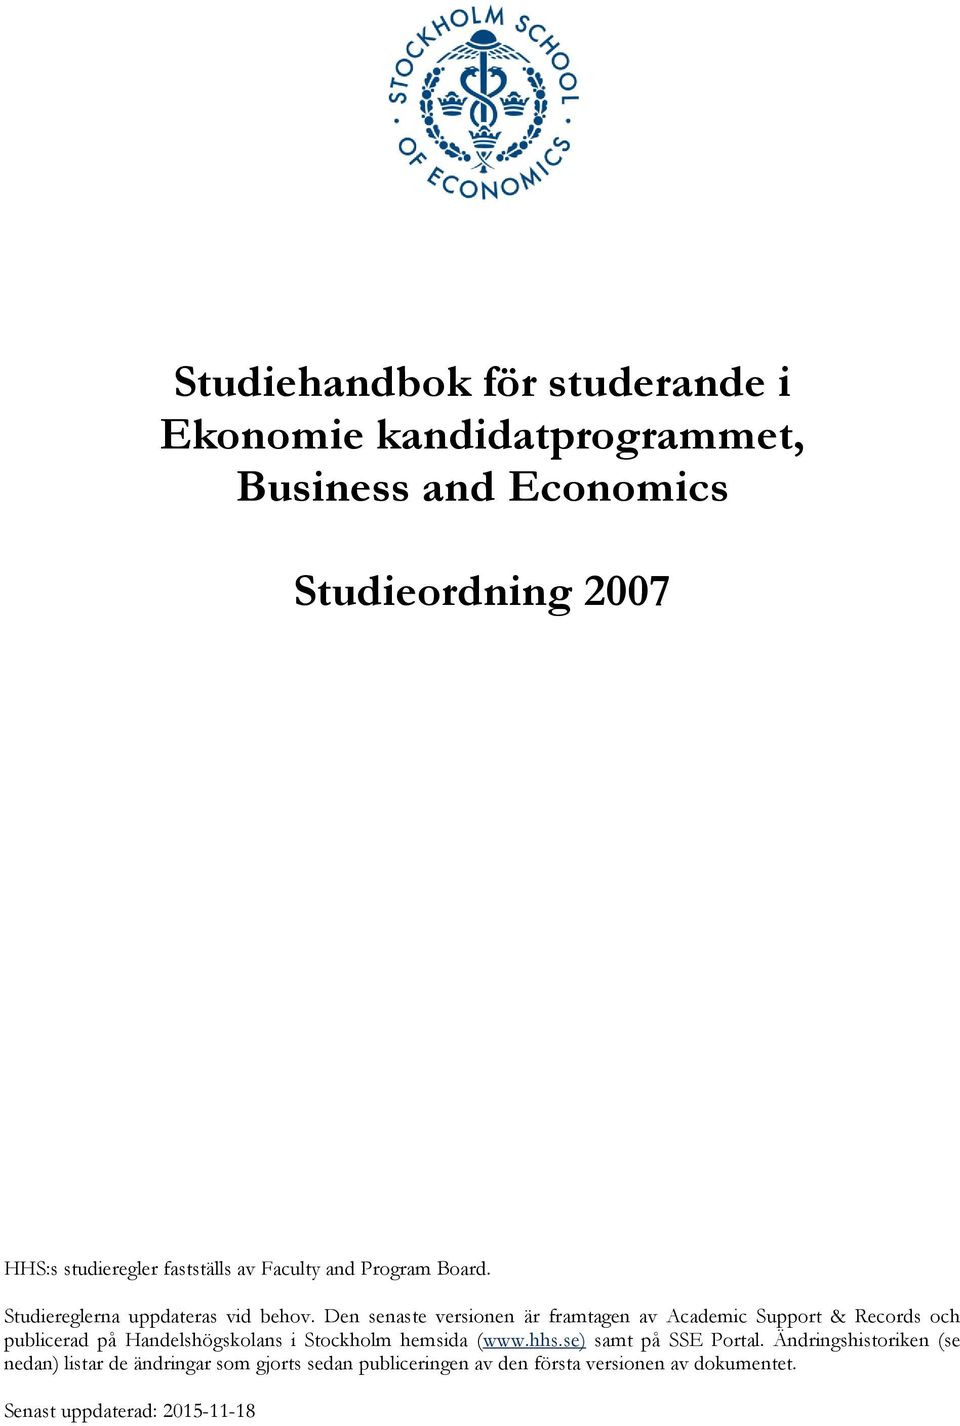 Den senaste versionen är framtagen av Academic Support & Records och publicerad på Handelshögskolans i Stockholm hemsida (www.